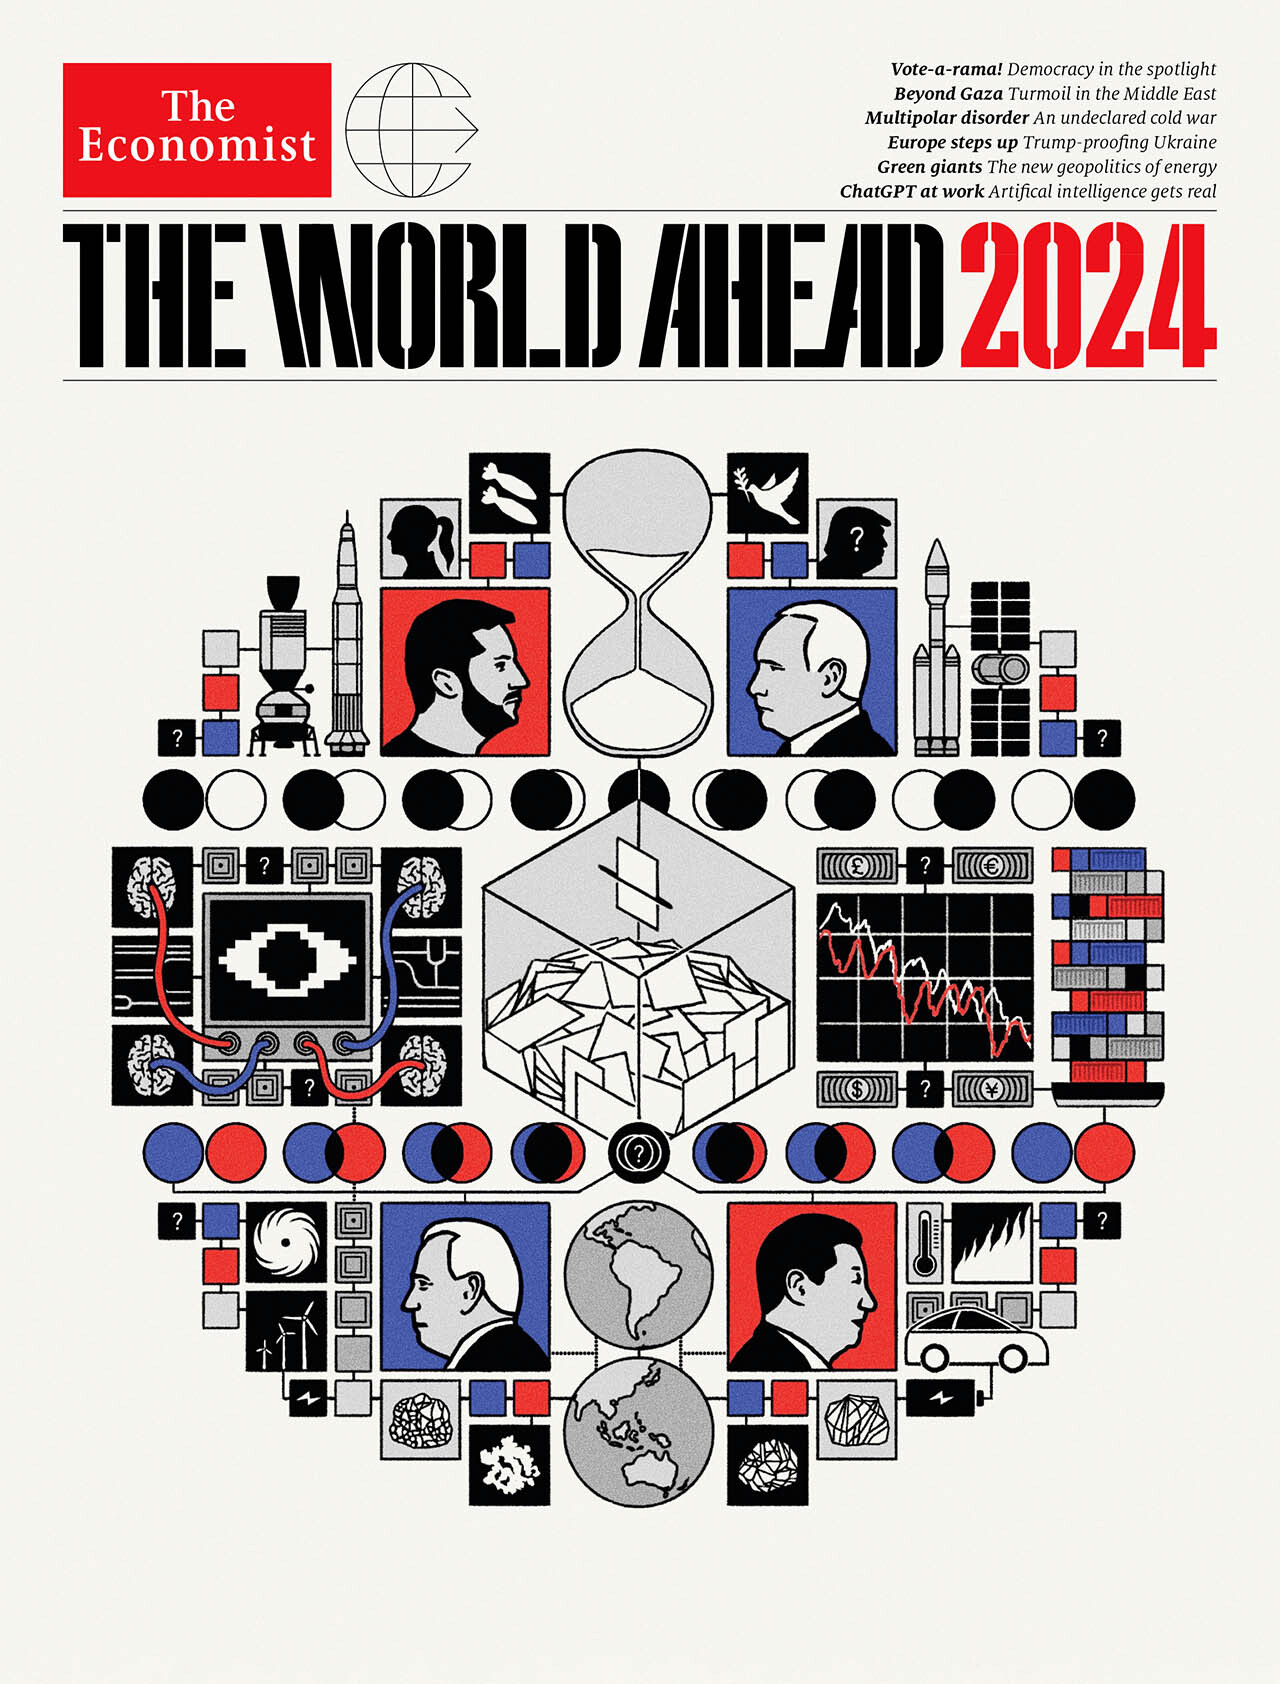 The World Ahead 2024